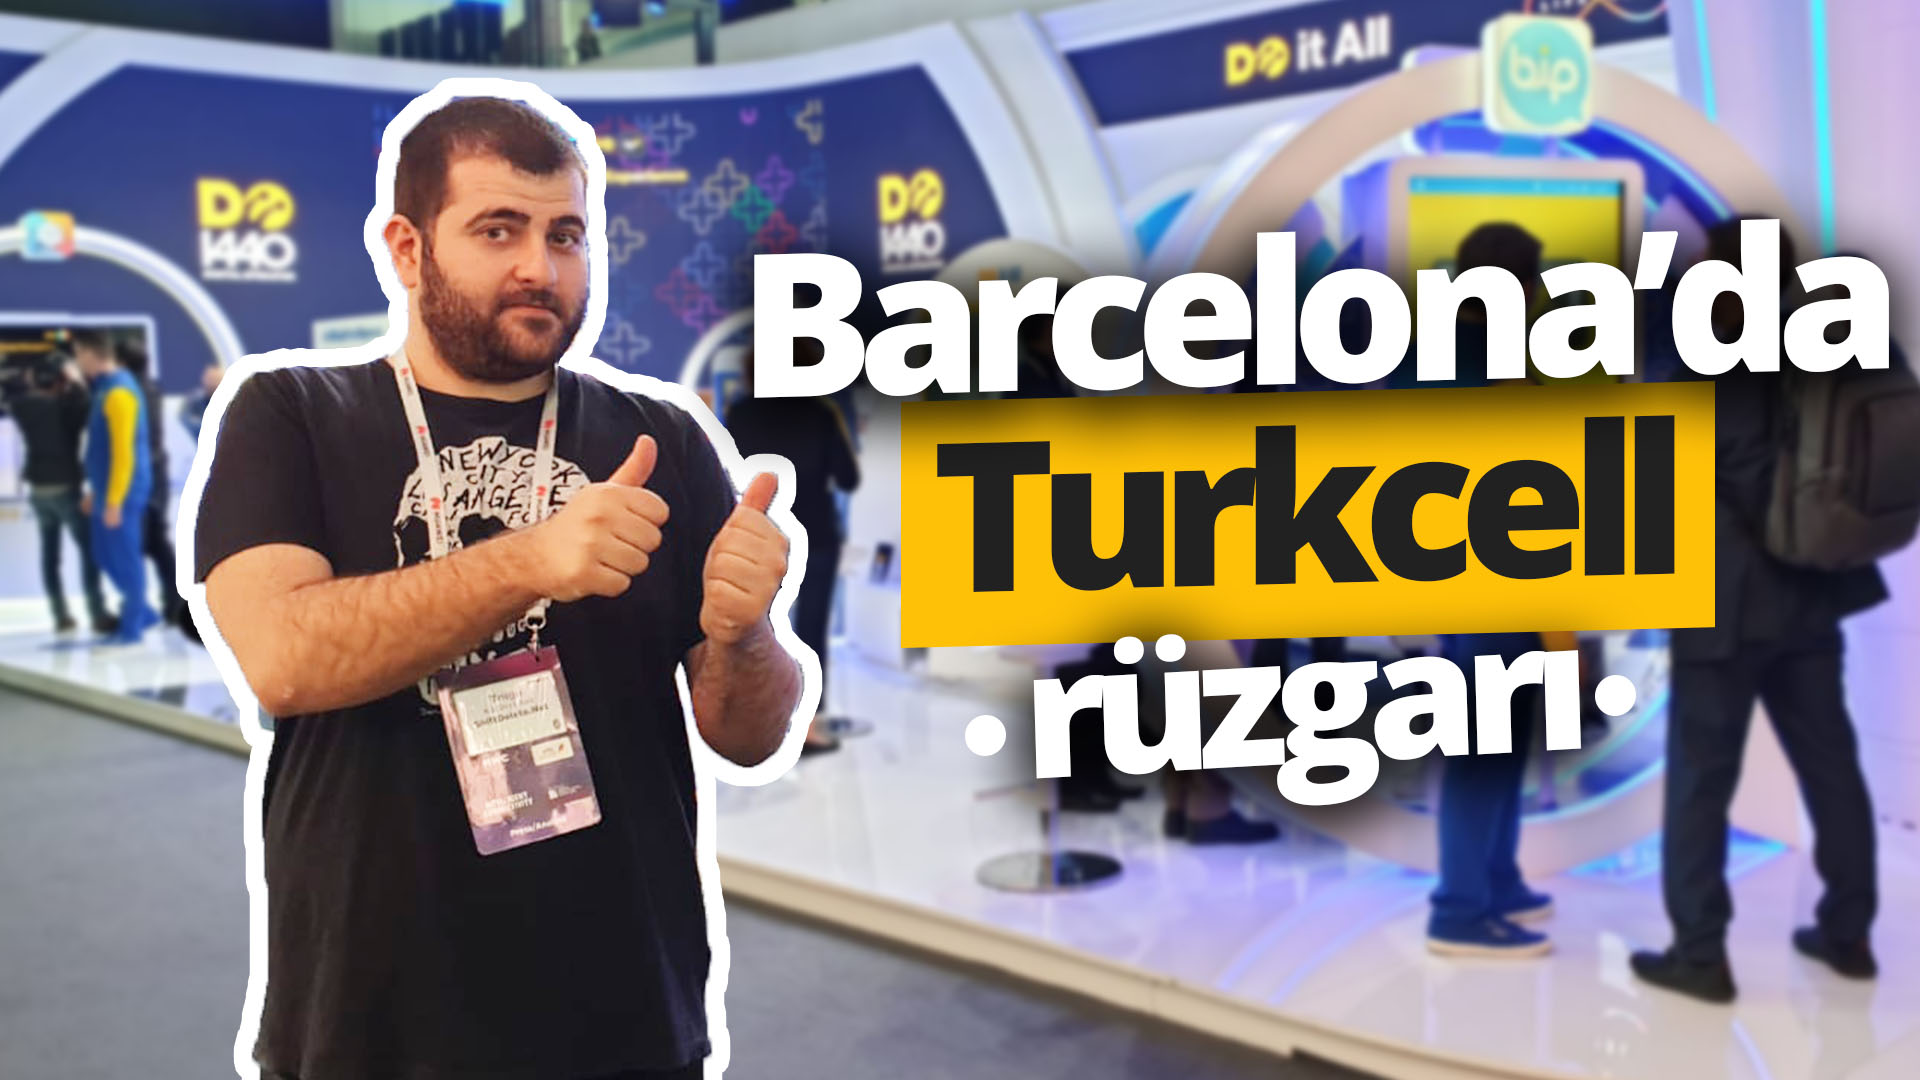 Turkcell’in Barcelona’daki ödüllü standını gezdik! vLog